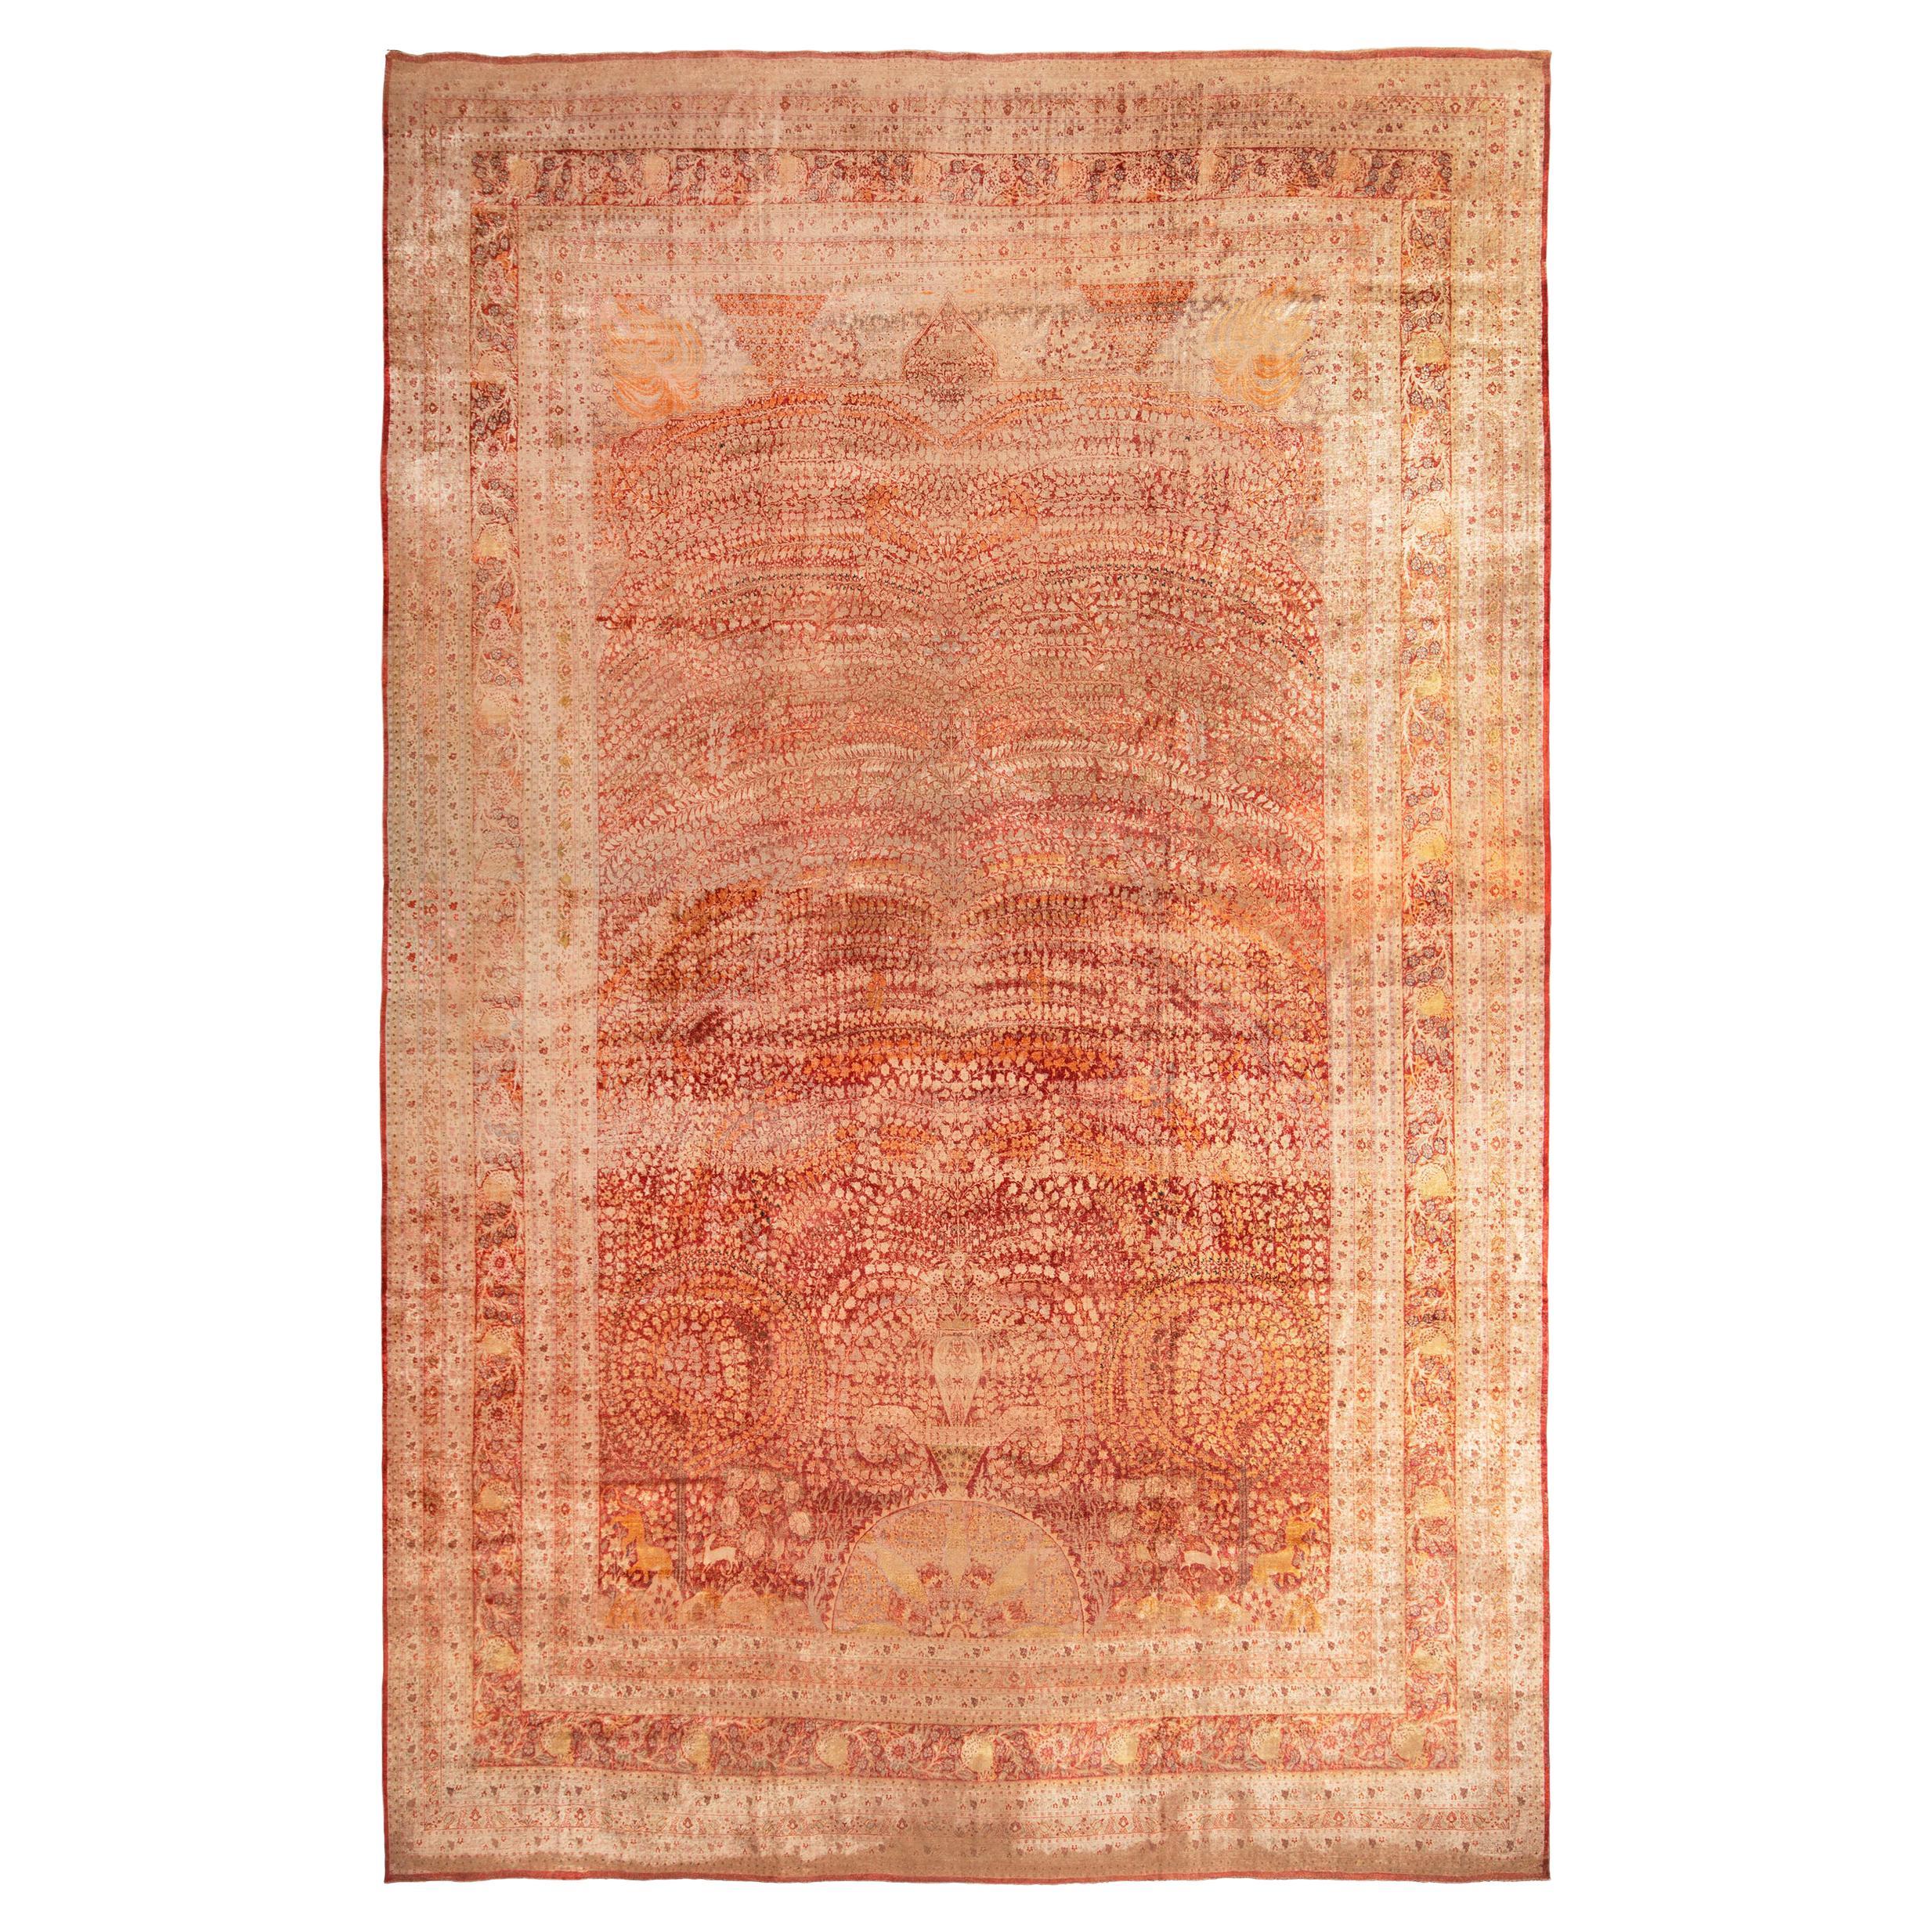 Handgeknüpfter antiker persischer Teppich in Rot und Beige mit Blumenmuster von Teppich & Kelim